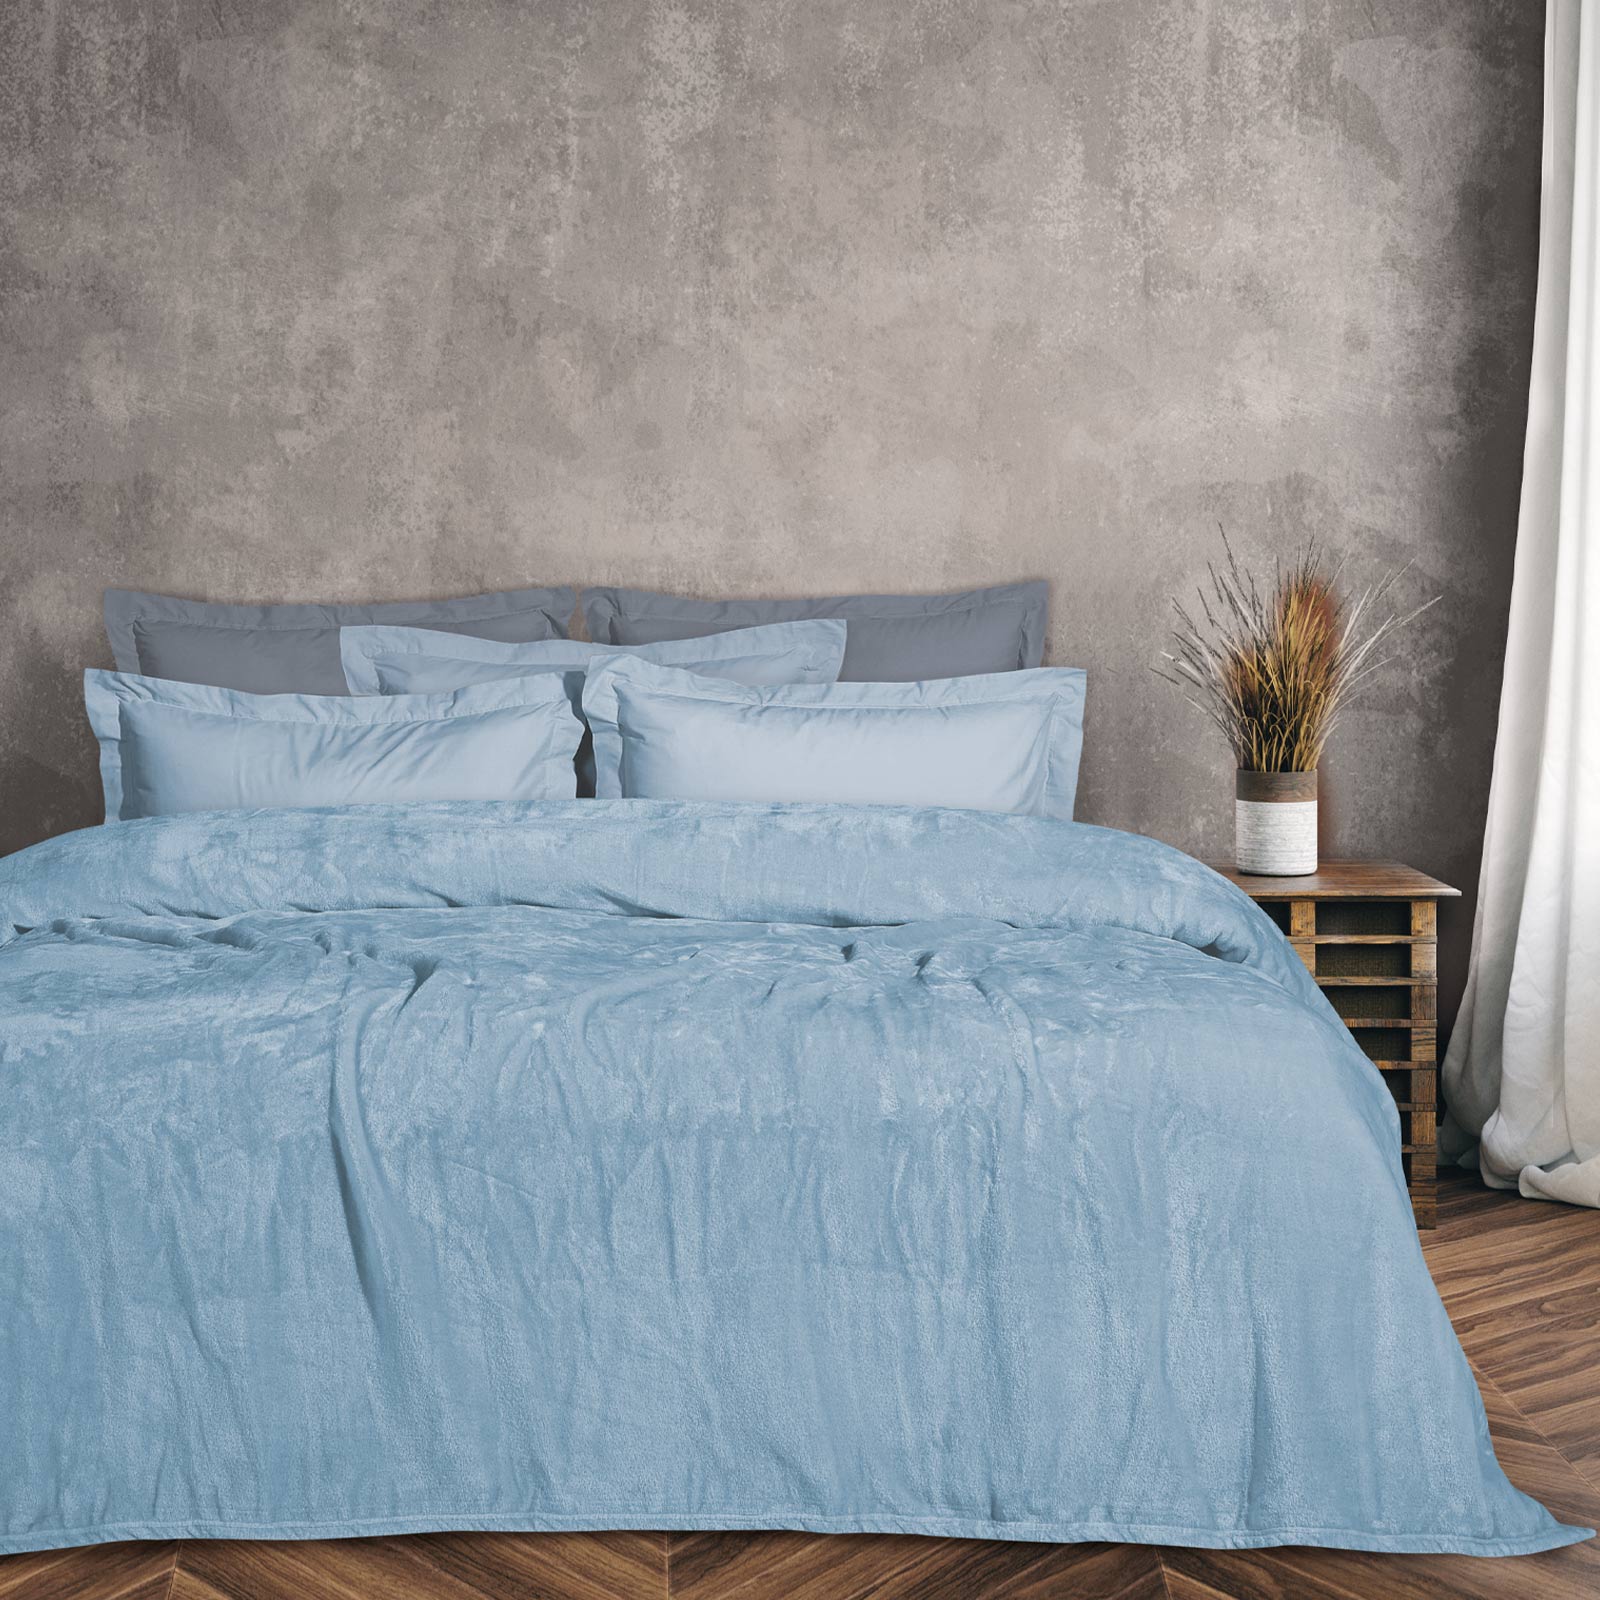 Κουβέρτα Βελουτέ Μονόχρωμη Υπέρδιπλη 220×240εκ. Blankets 1344 Γαλάζια Das Home (Ύφασμα: Polyester, Χρώμα: Γαλάζιο , Μέγεθος: Υπέρδιπλα) – Das Home – 420577721344